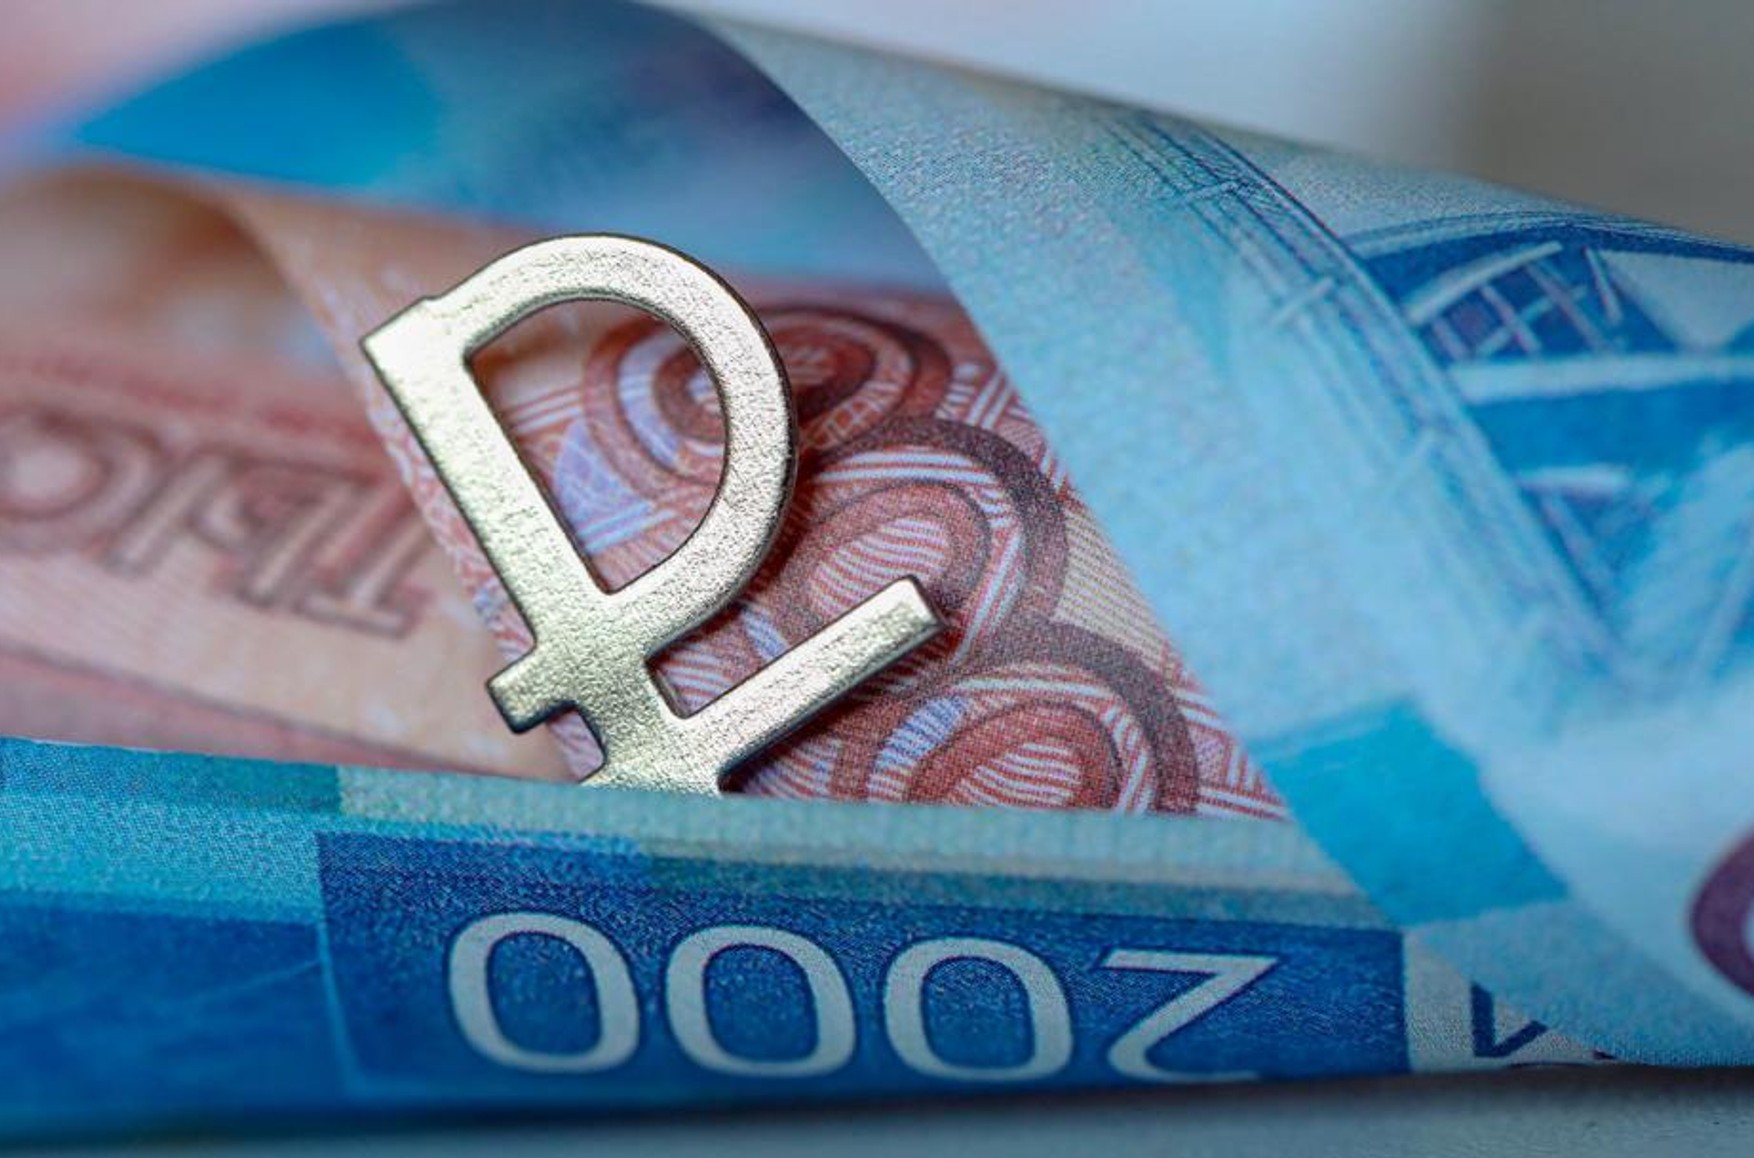 Мінфін знизив частки долара і євро в структурі коштів ФНБ, розмістивши 20% валютної частини фонду в юанях і ієнах